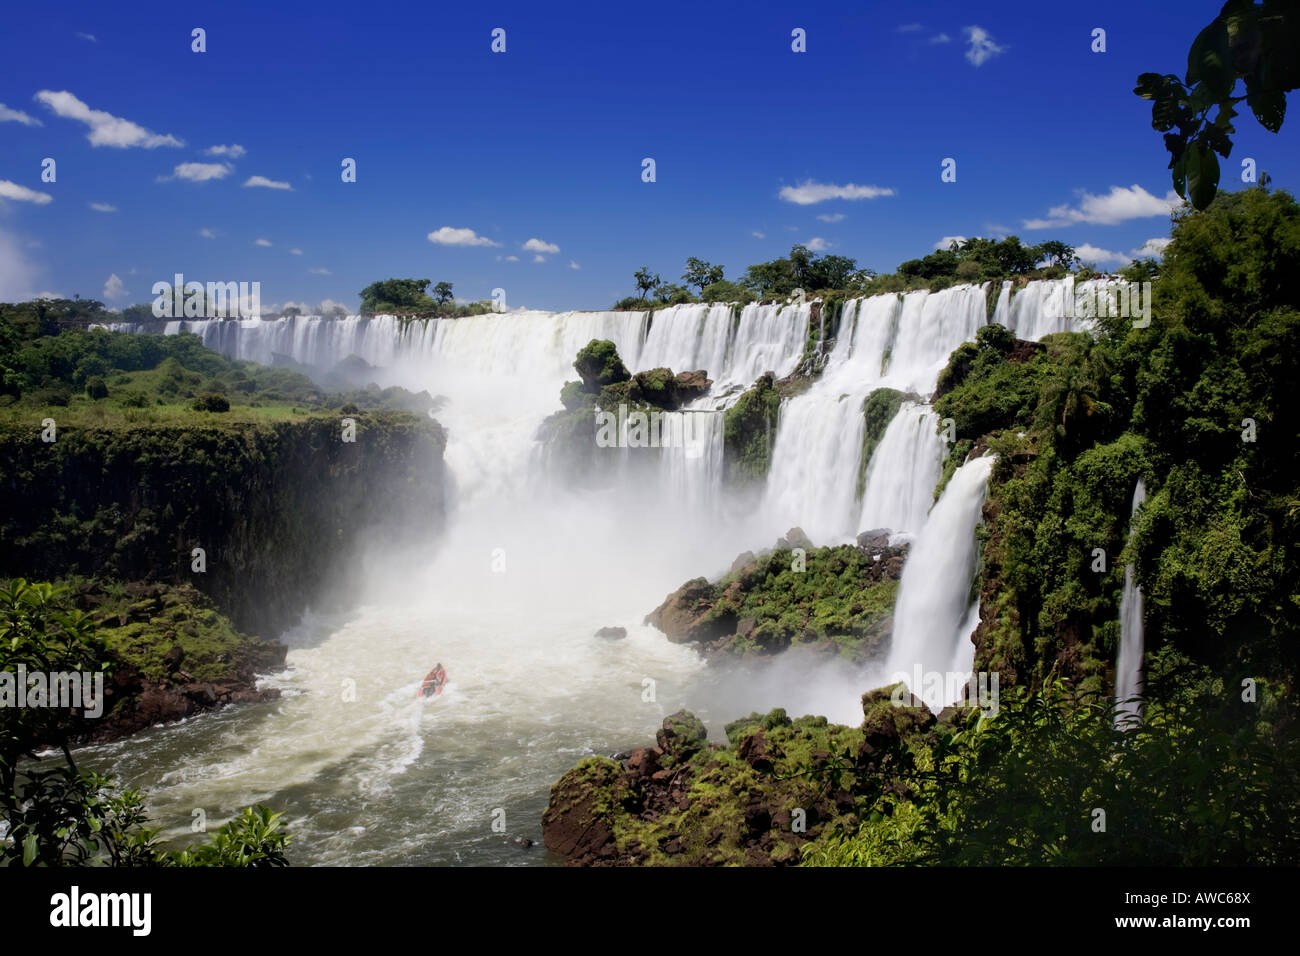 Las Cataratas de Iguazú es la mayor serie de cascadas en el planeta Esta imagen muestra uno de los botes de paseo fluvial Foto de stock